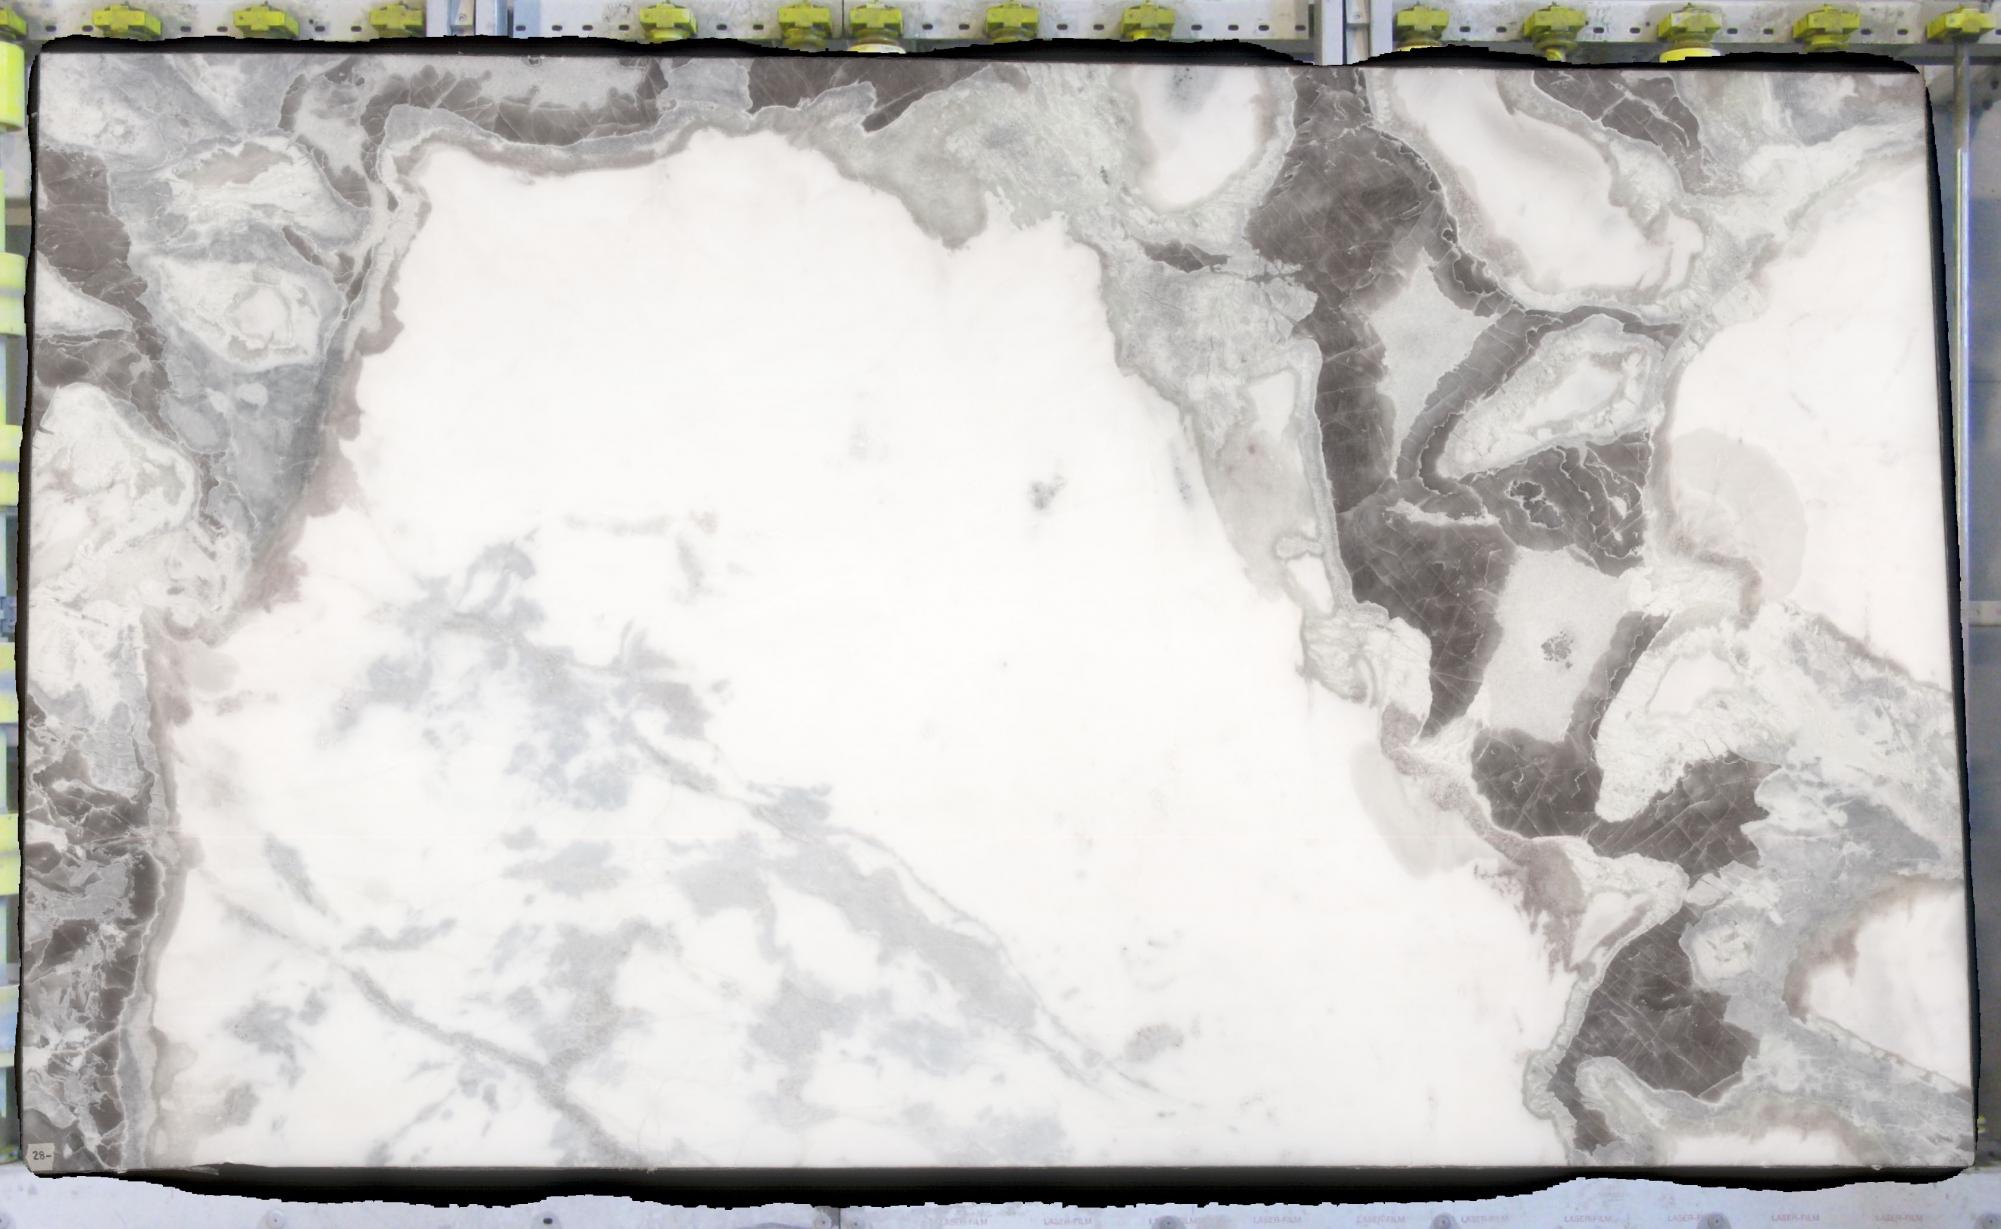 DOVER GREEN gesägte Unmaßplatten C0167 aus Natur Marmor , Slab #28: Lieferung Veneto, Italien 